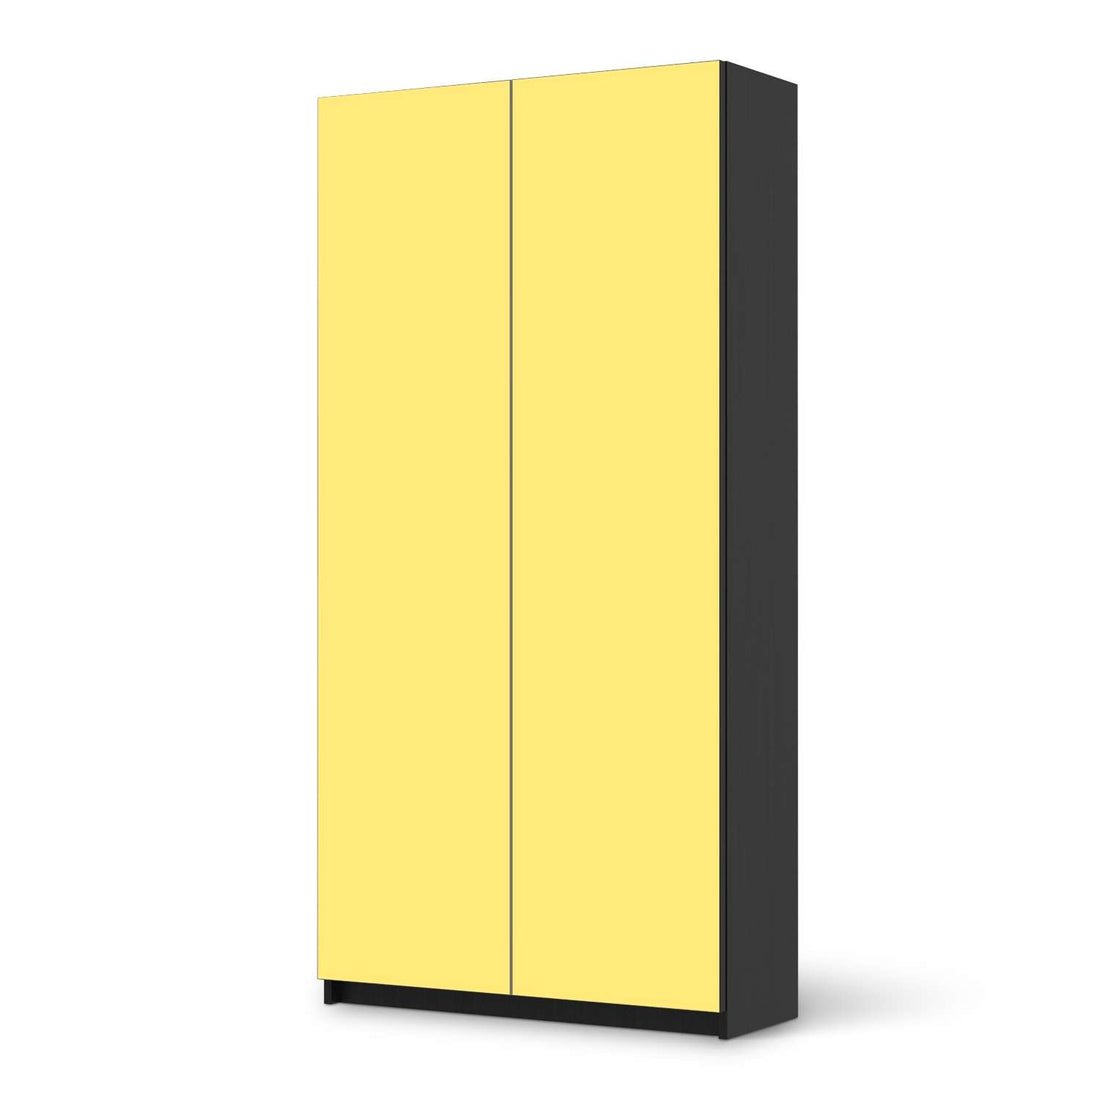 Klebefolie für Möbel Gelb Light - IKEA Pax Schrank 201 cm Höhe - 2 Türen - schwarz